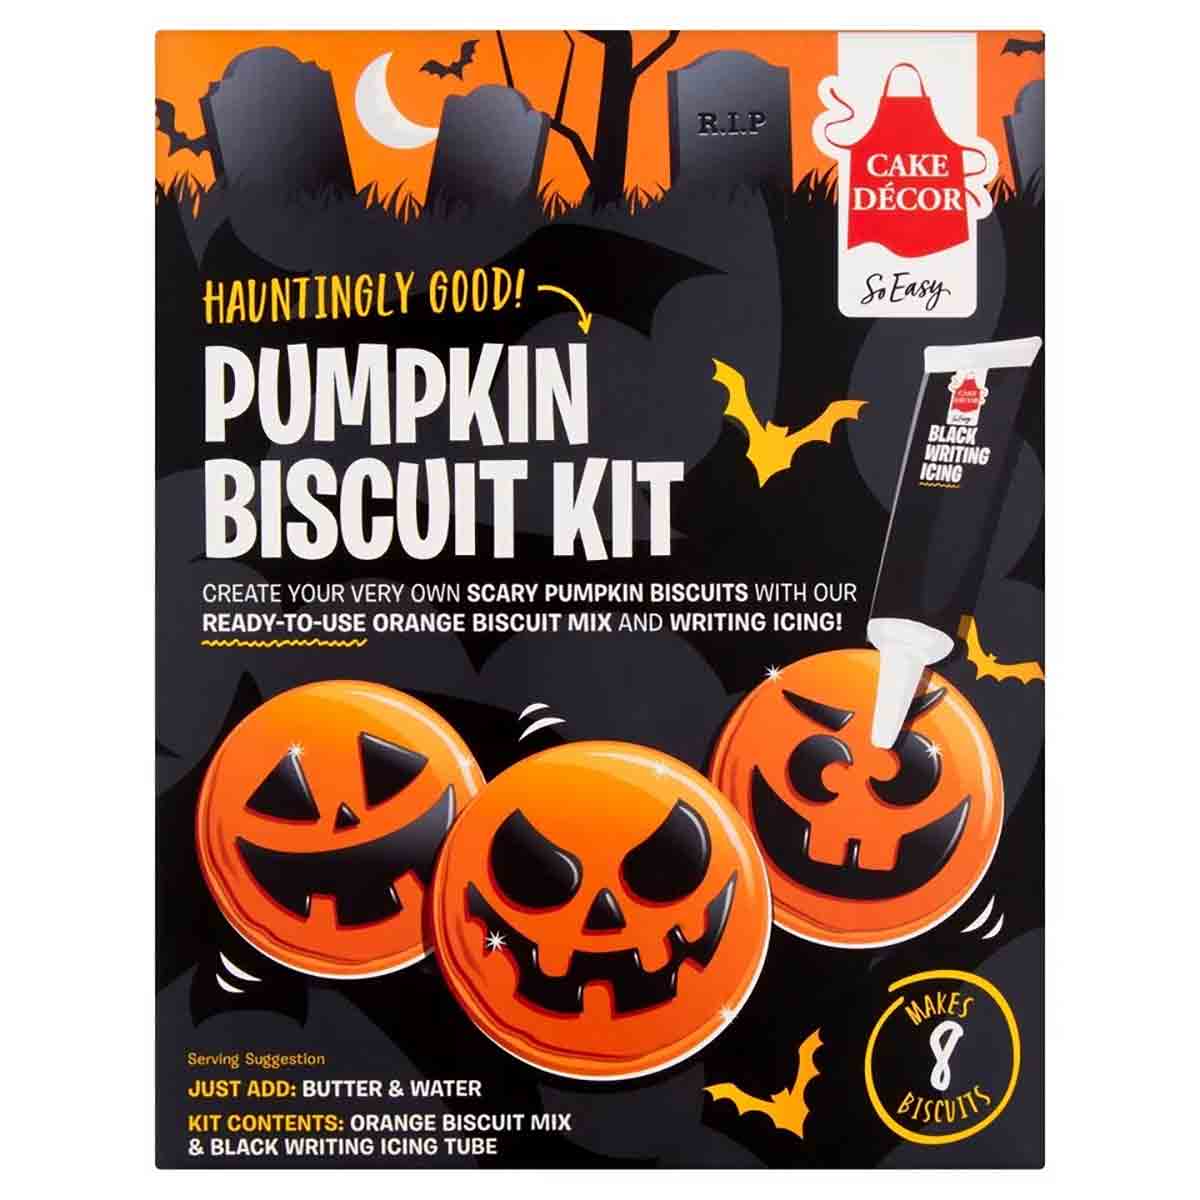 Vegan Pumpkin Biscuit Kit For Halloween